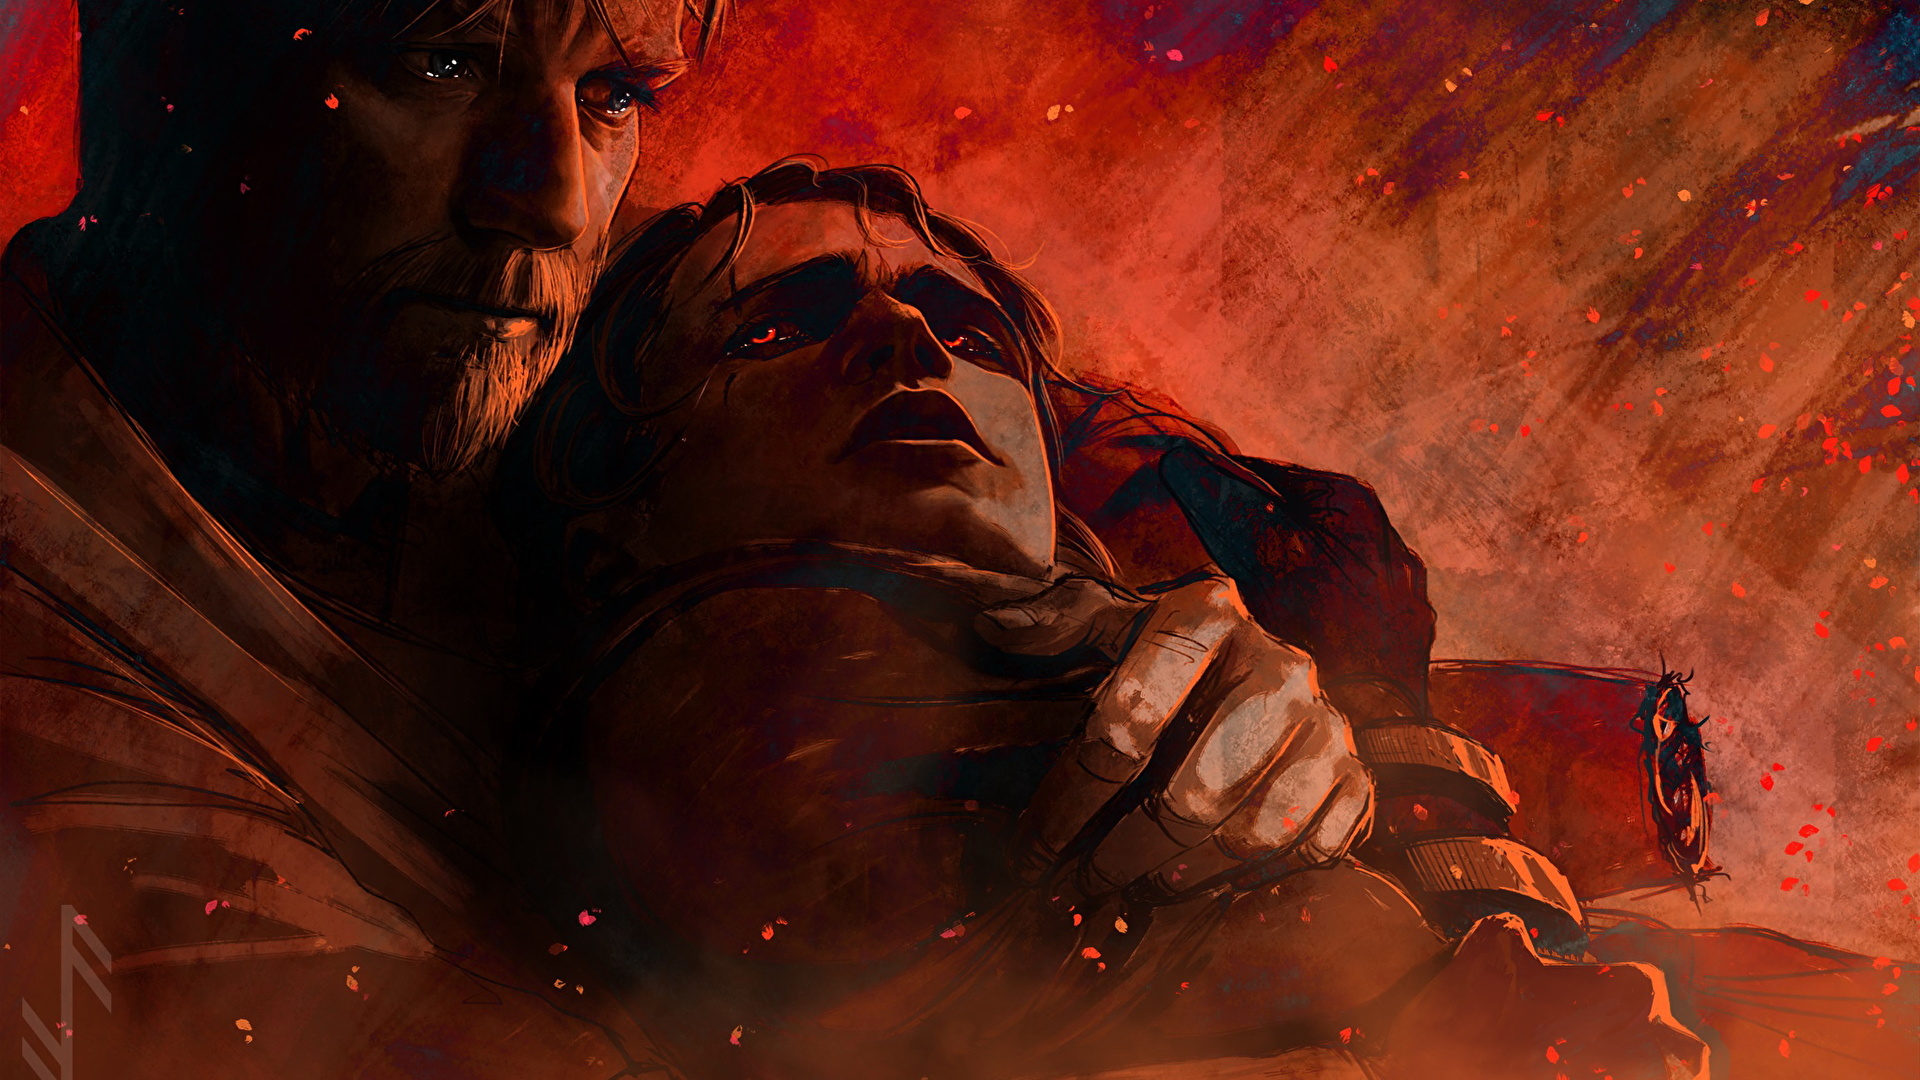 壁紙 19x1080 スター ウォーズ エピソード3 シスの復讐 男性 Obi Wan Helps Anakin On Mustafar 2 二つ 映画 ダウンロード 写真